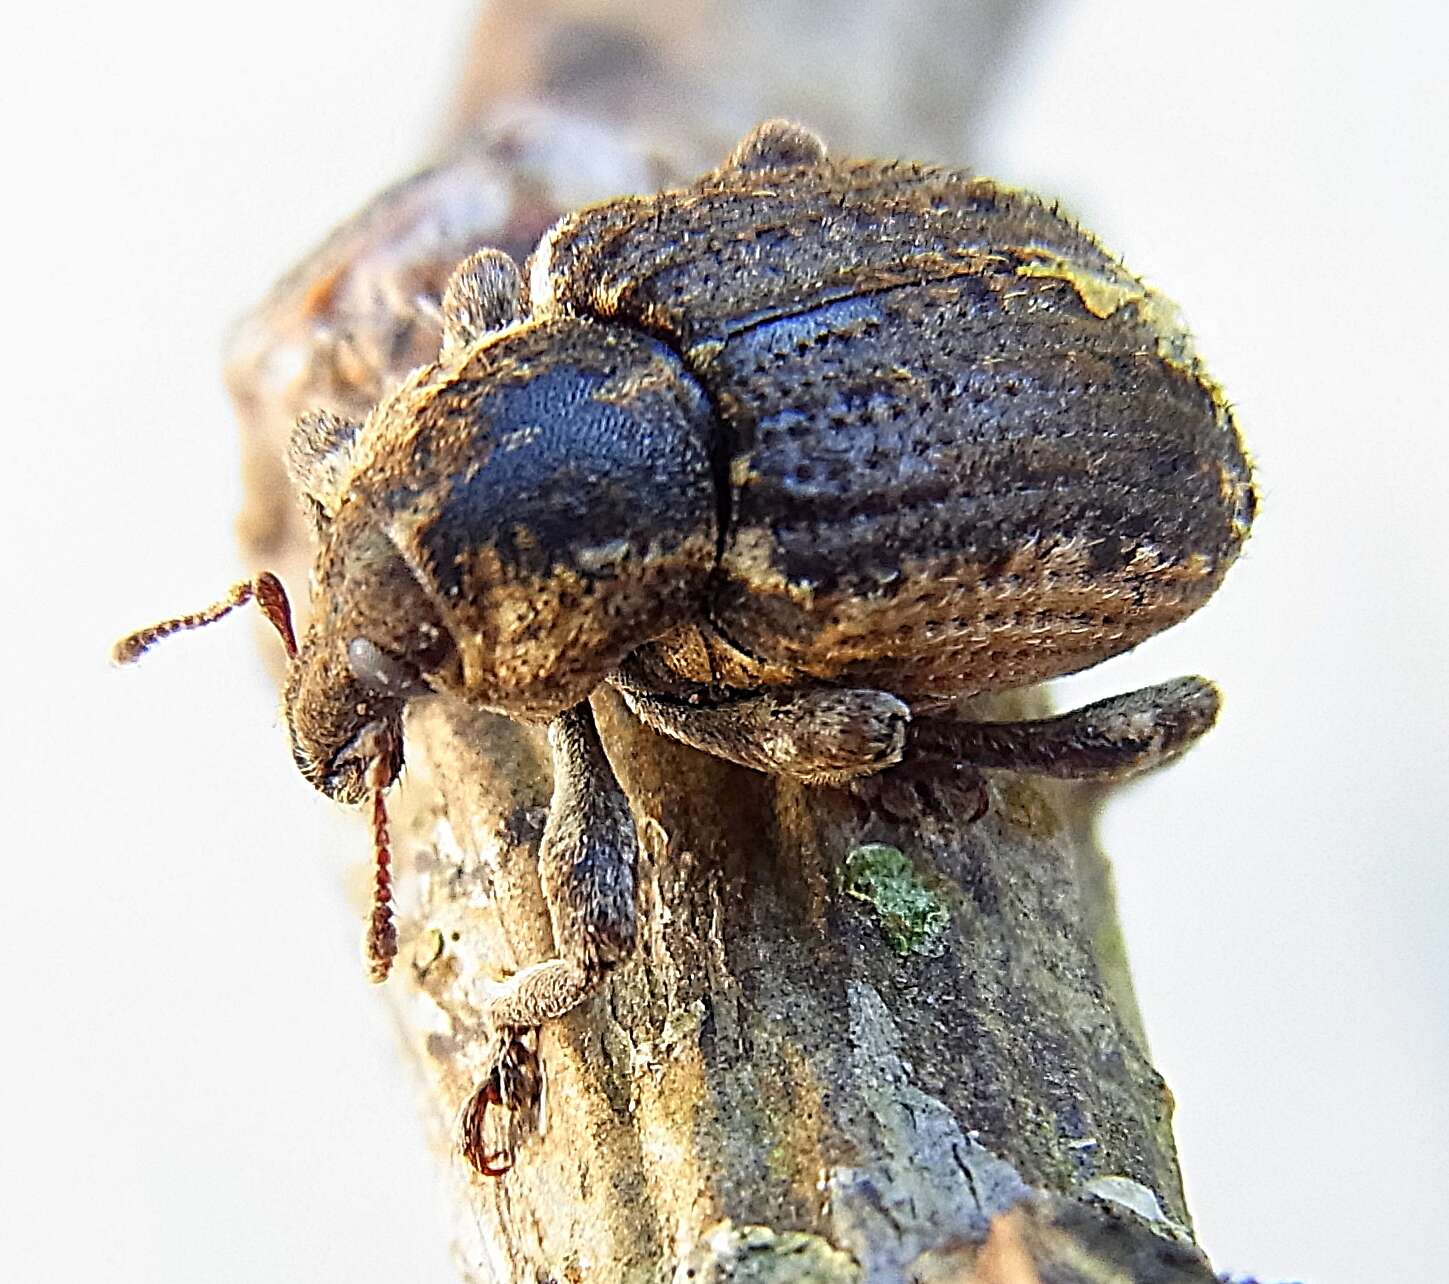 Image of Clover Leaf Weevil